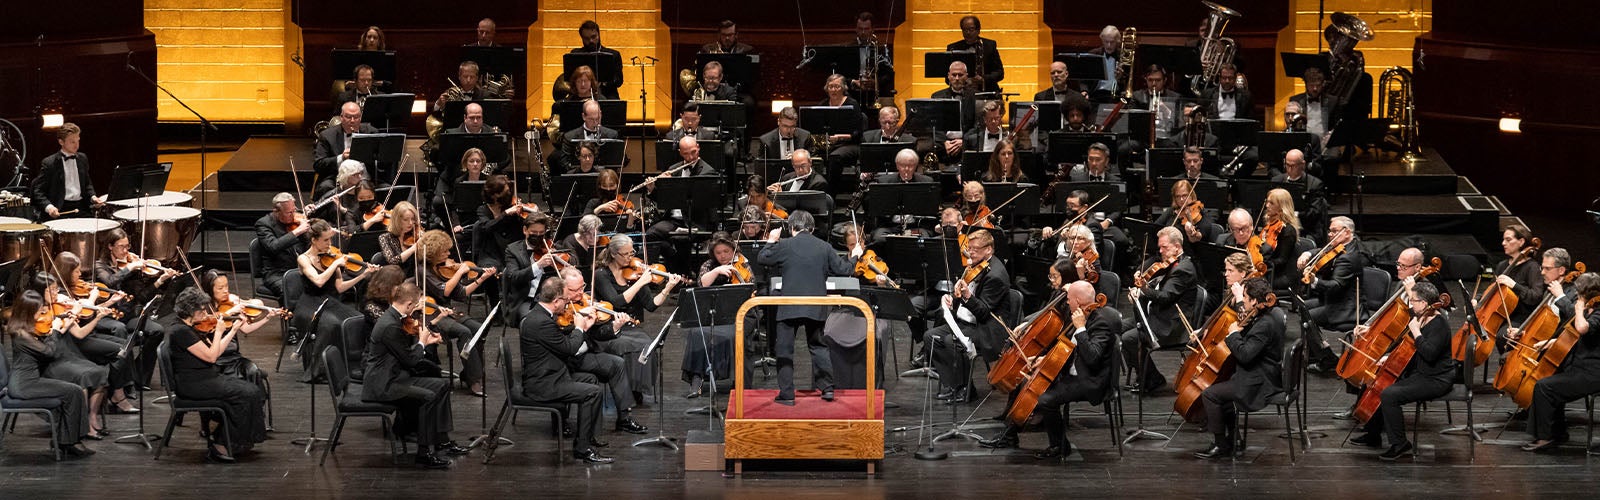 Xian Zhang conducting the New Jersey Symphony.jpg